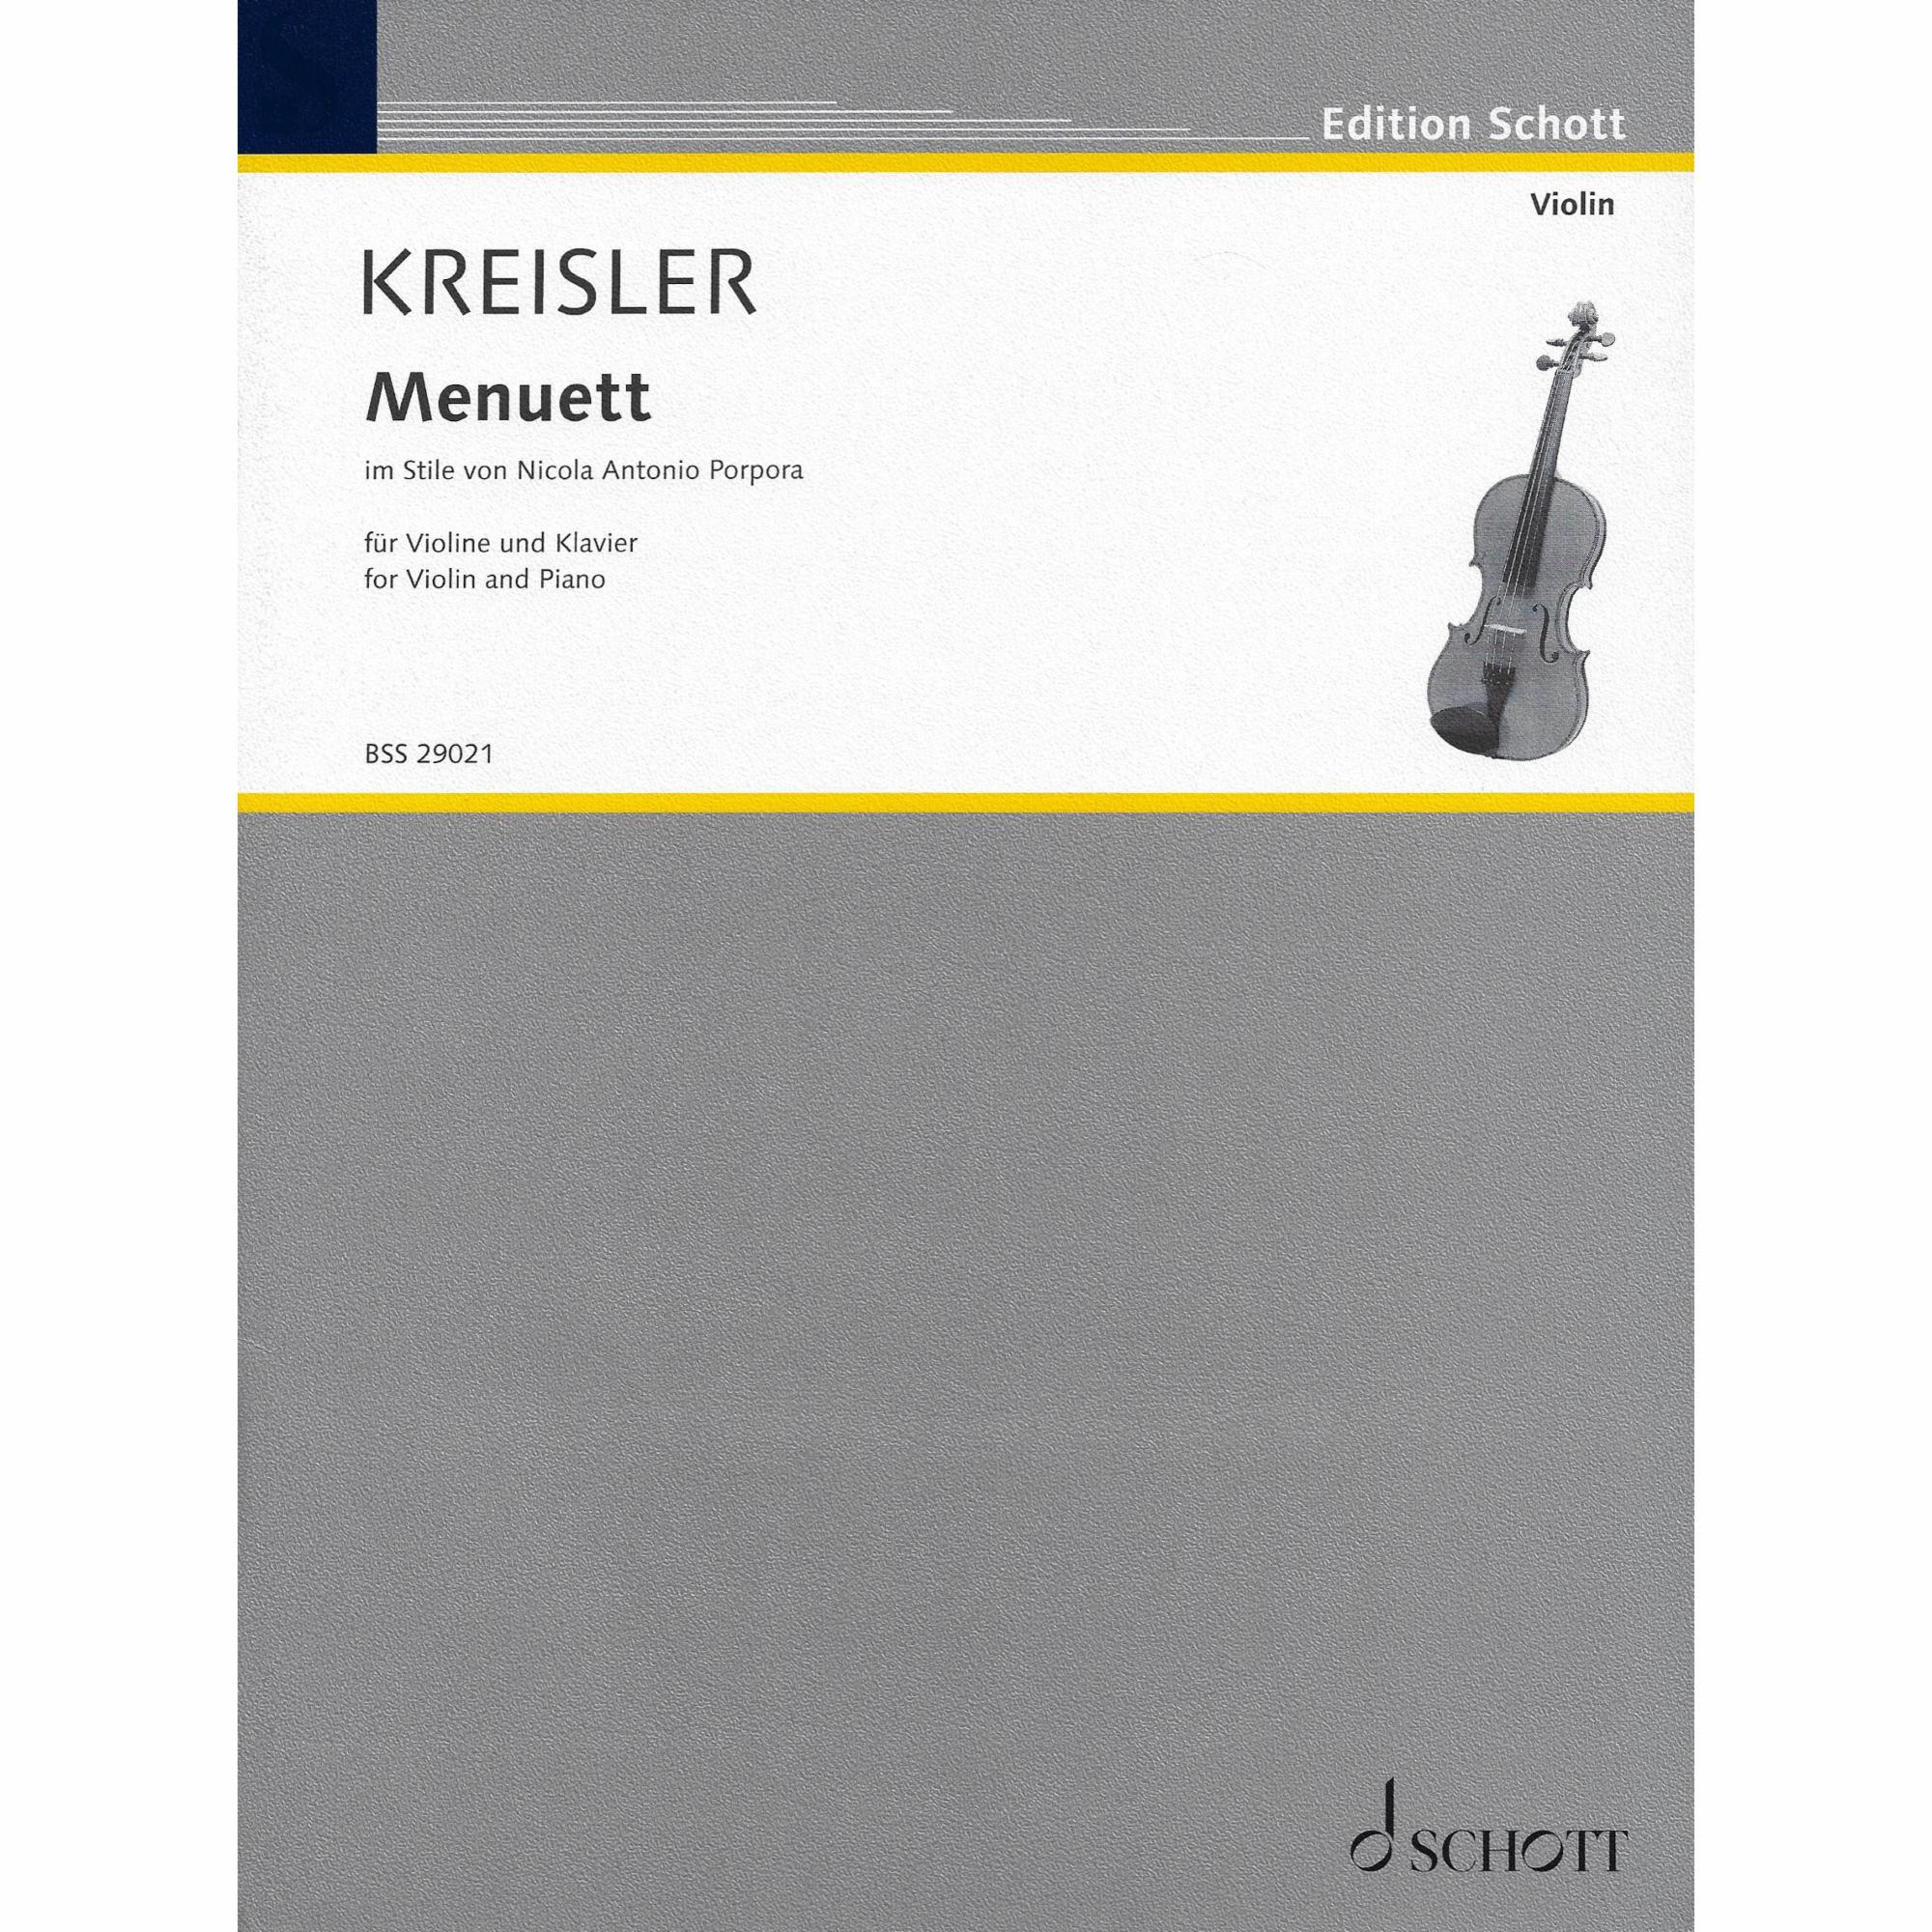 Kreisler -- Menuett for Violin and Piano